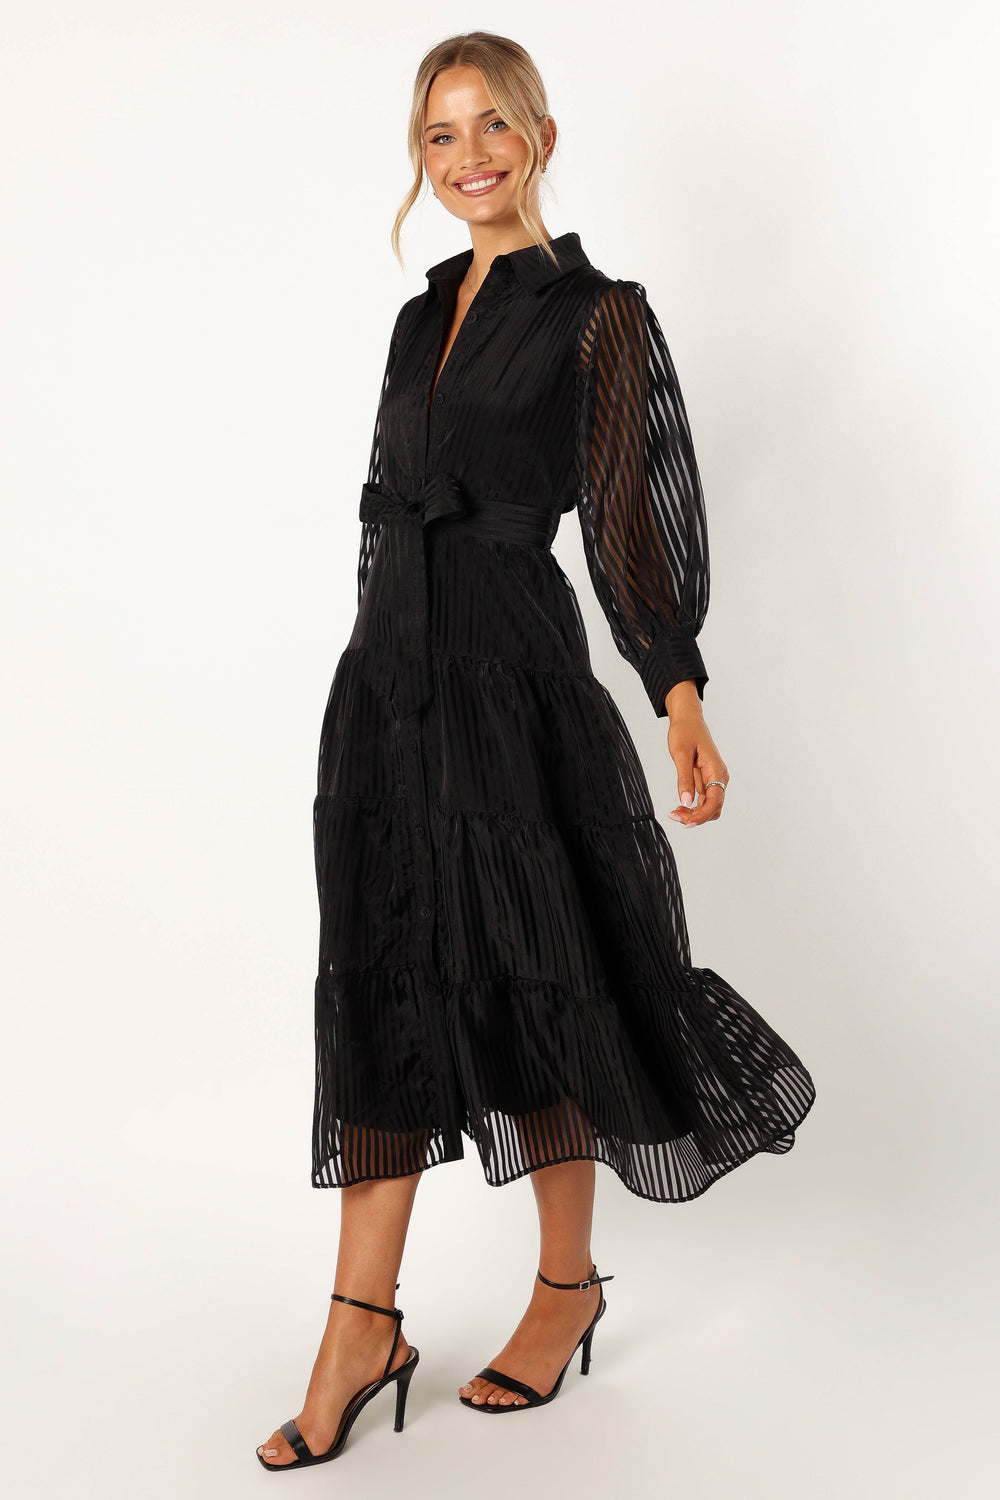 Neve Long & USA Petal Black Dress - Maxi Pup Sleeve 